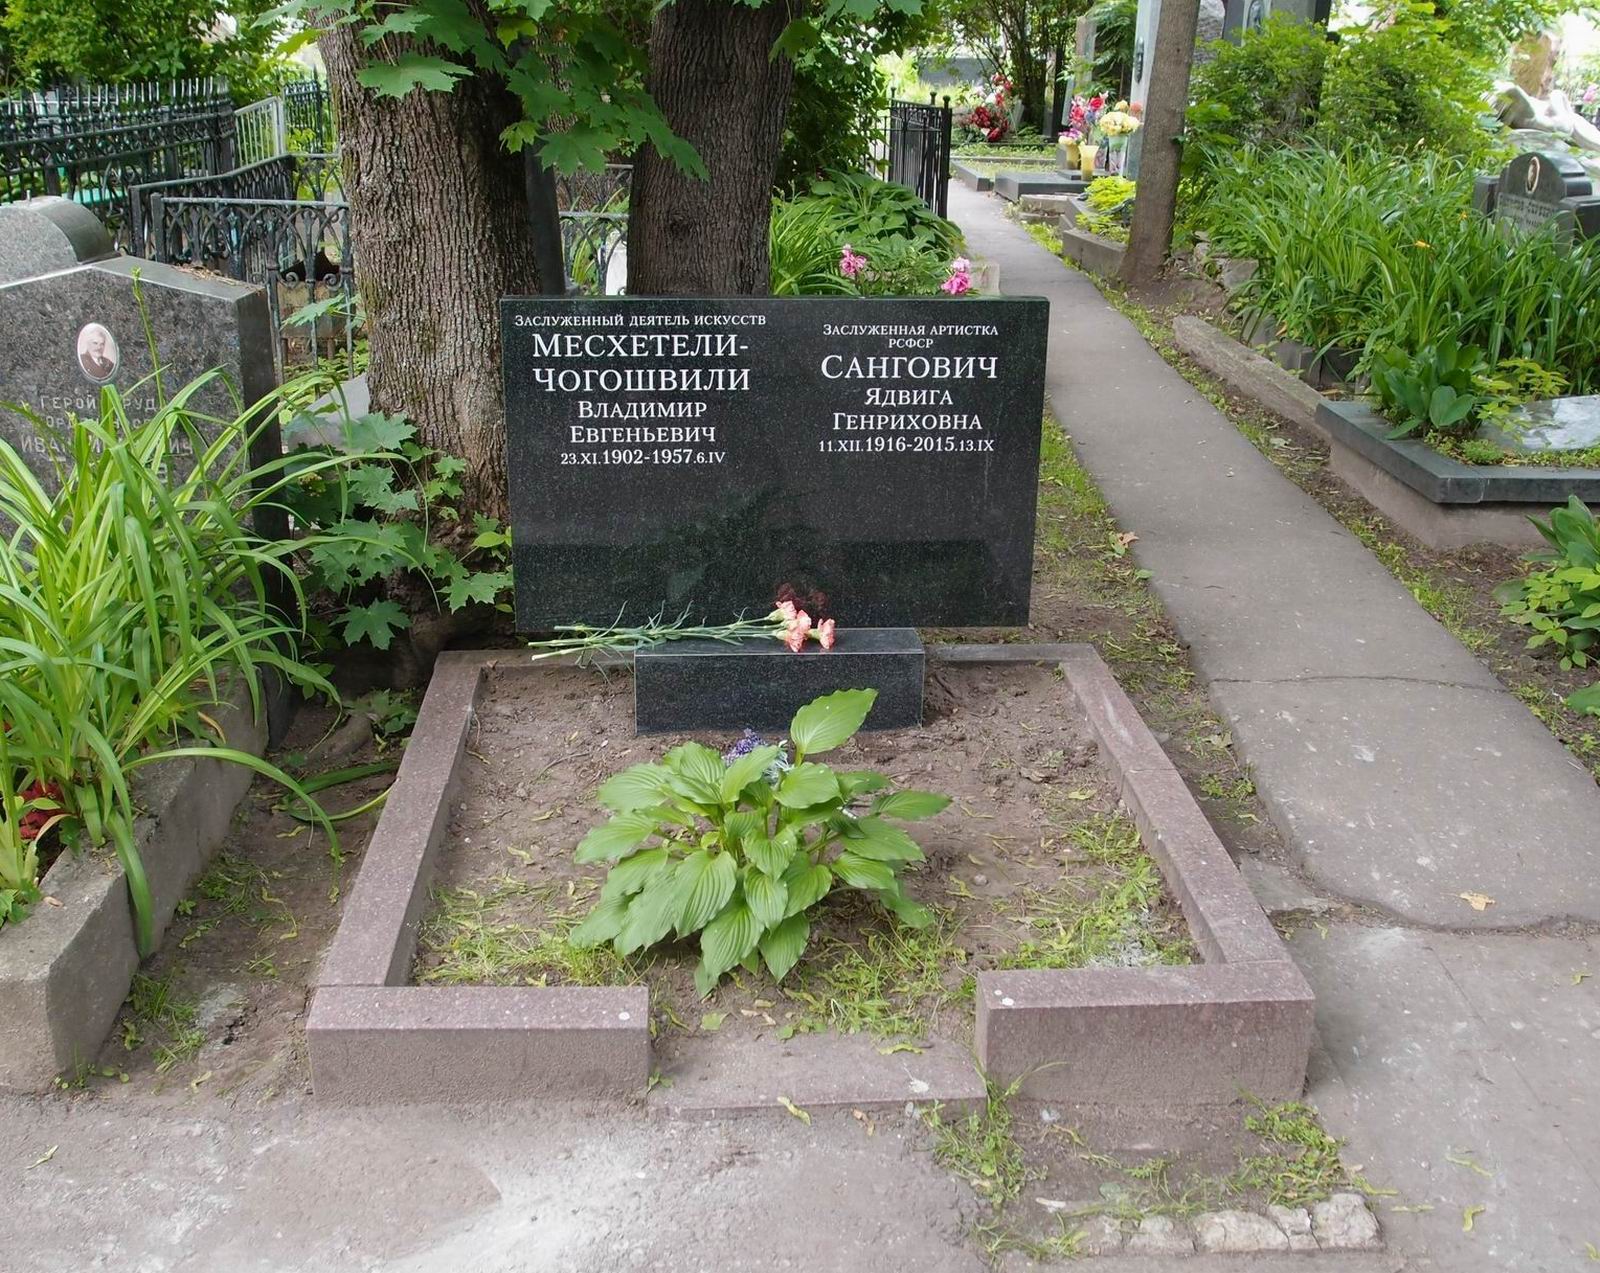 Памятник на могиле Месхетели В.Е. (1902-1957) и Сангович Я.Г. (1916-2015), на Новодевичьем кладбище (2-17-19). Нажмите левую кнопку мыши, чтобы увидеть памятник до 2015.